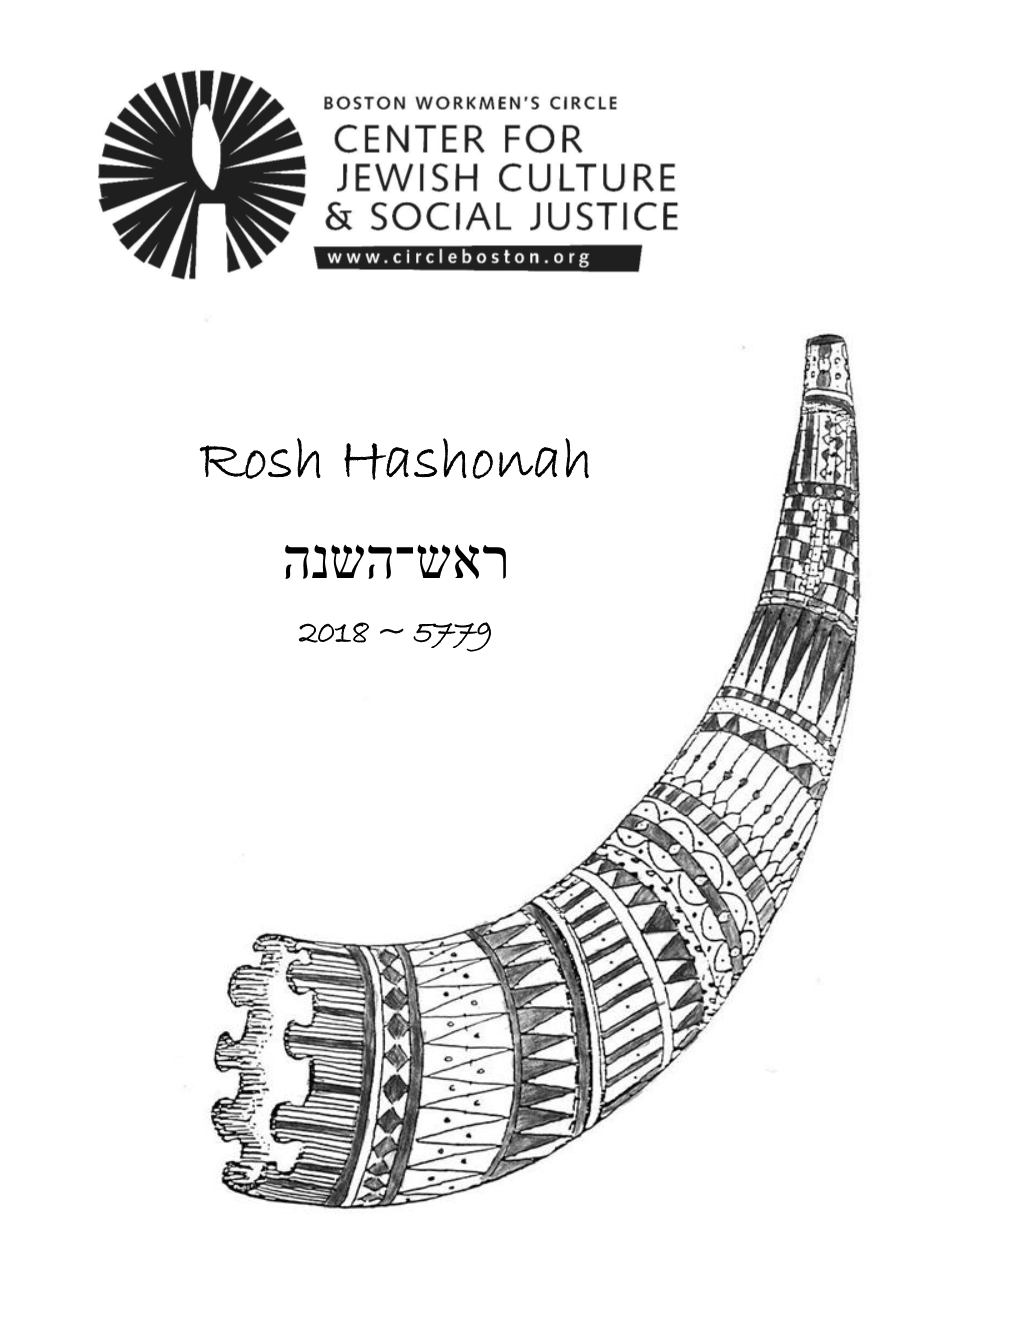 Rosh Hashanah 2018